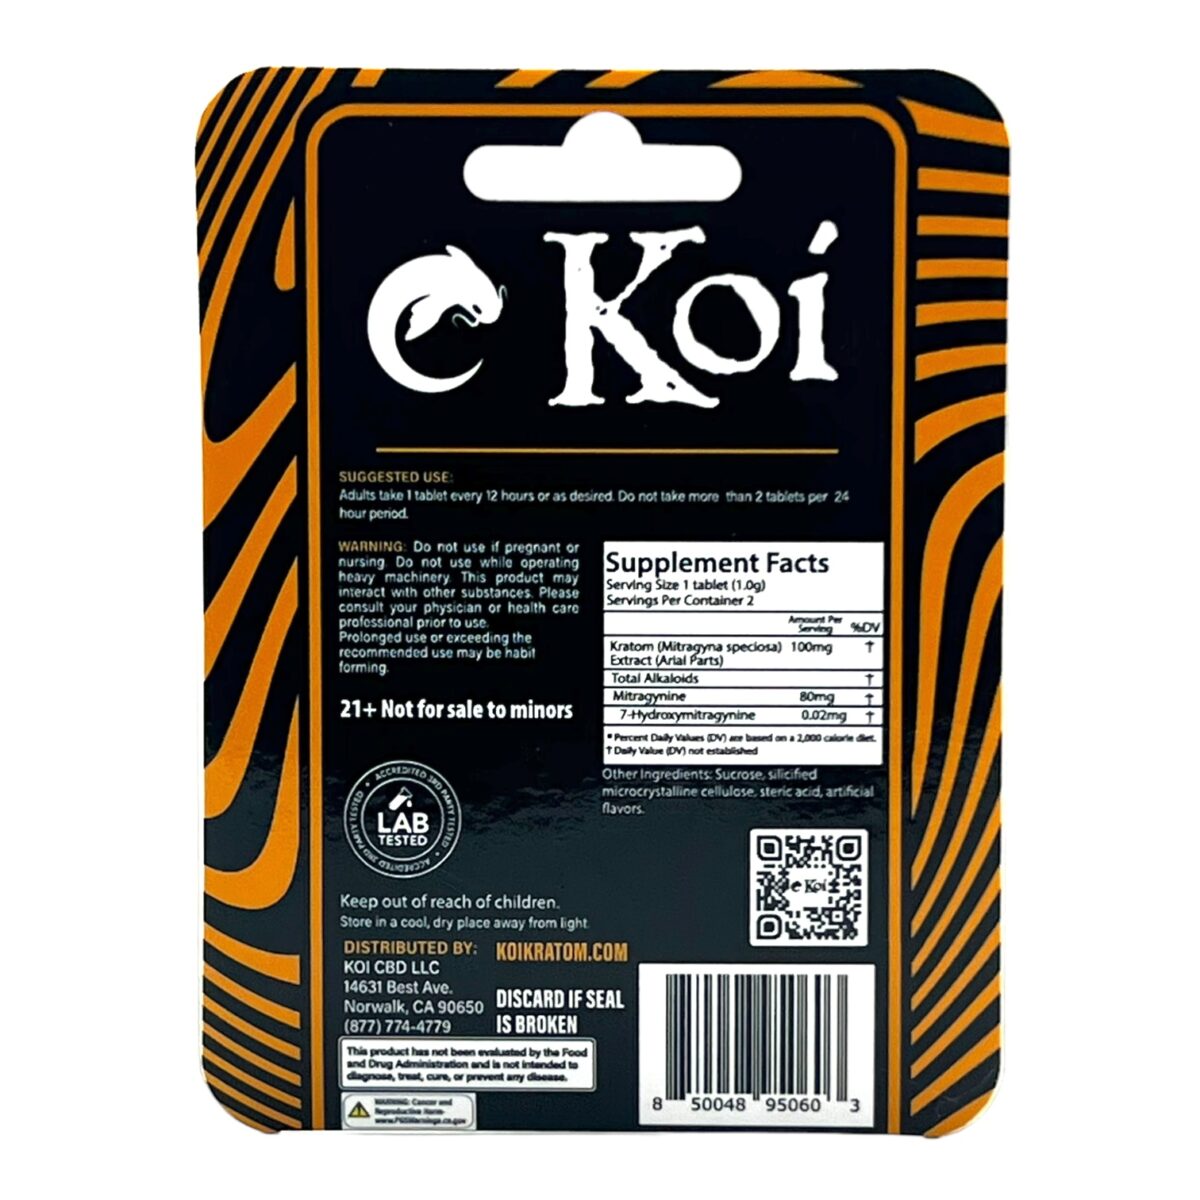 Koi Kratom Extract Tablets Tropical 160MG